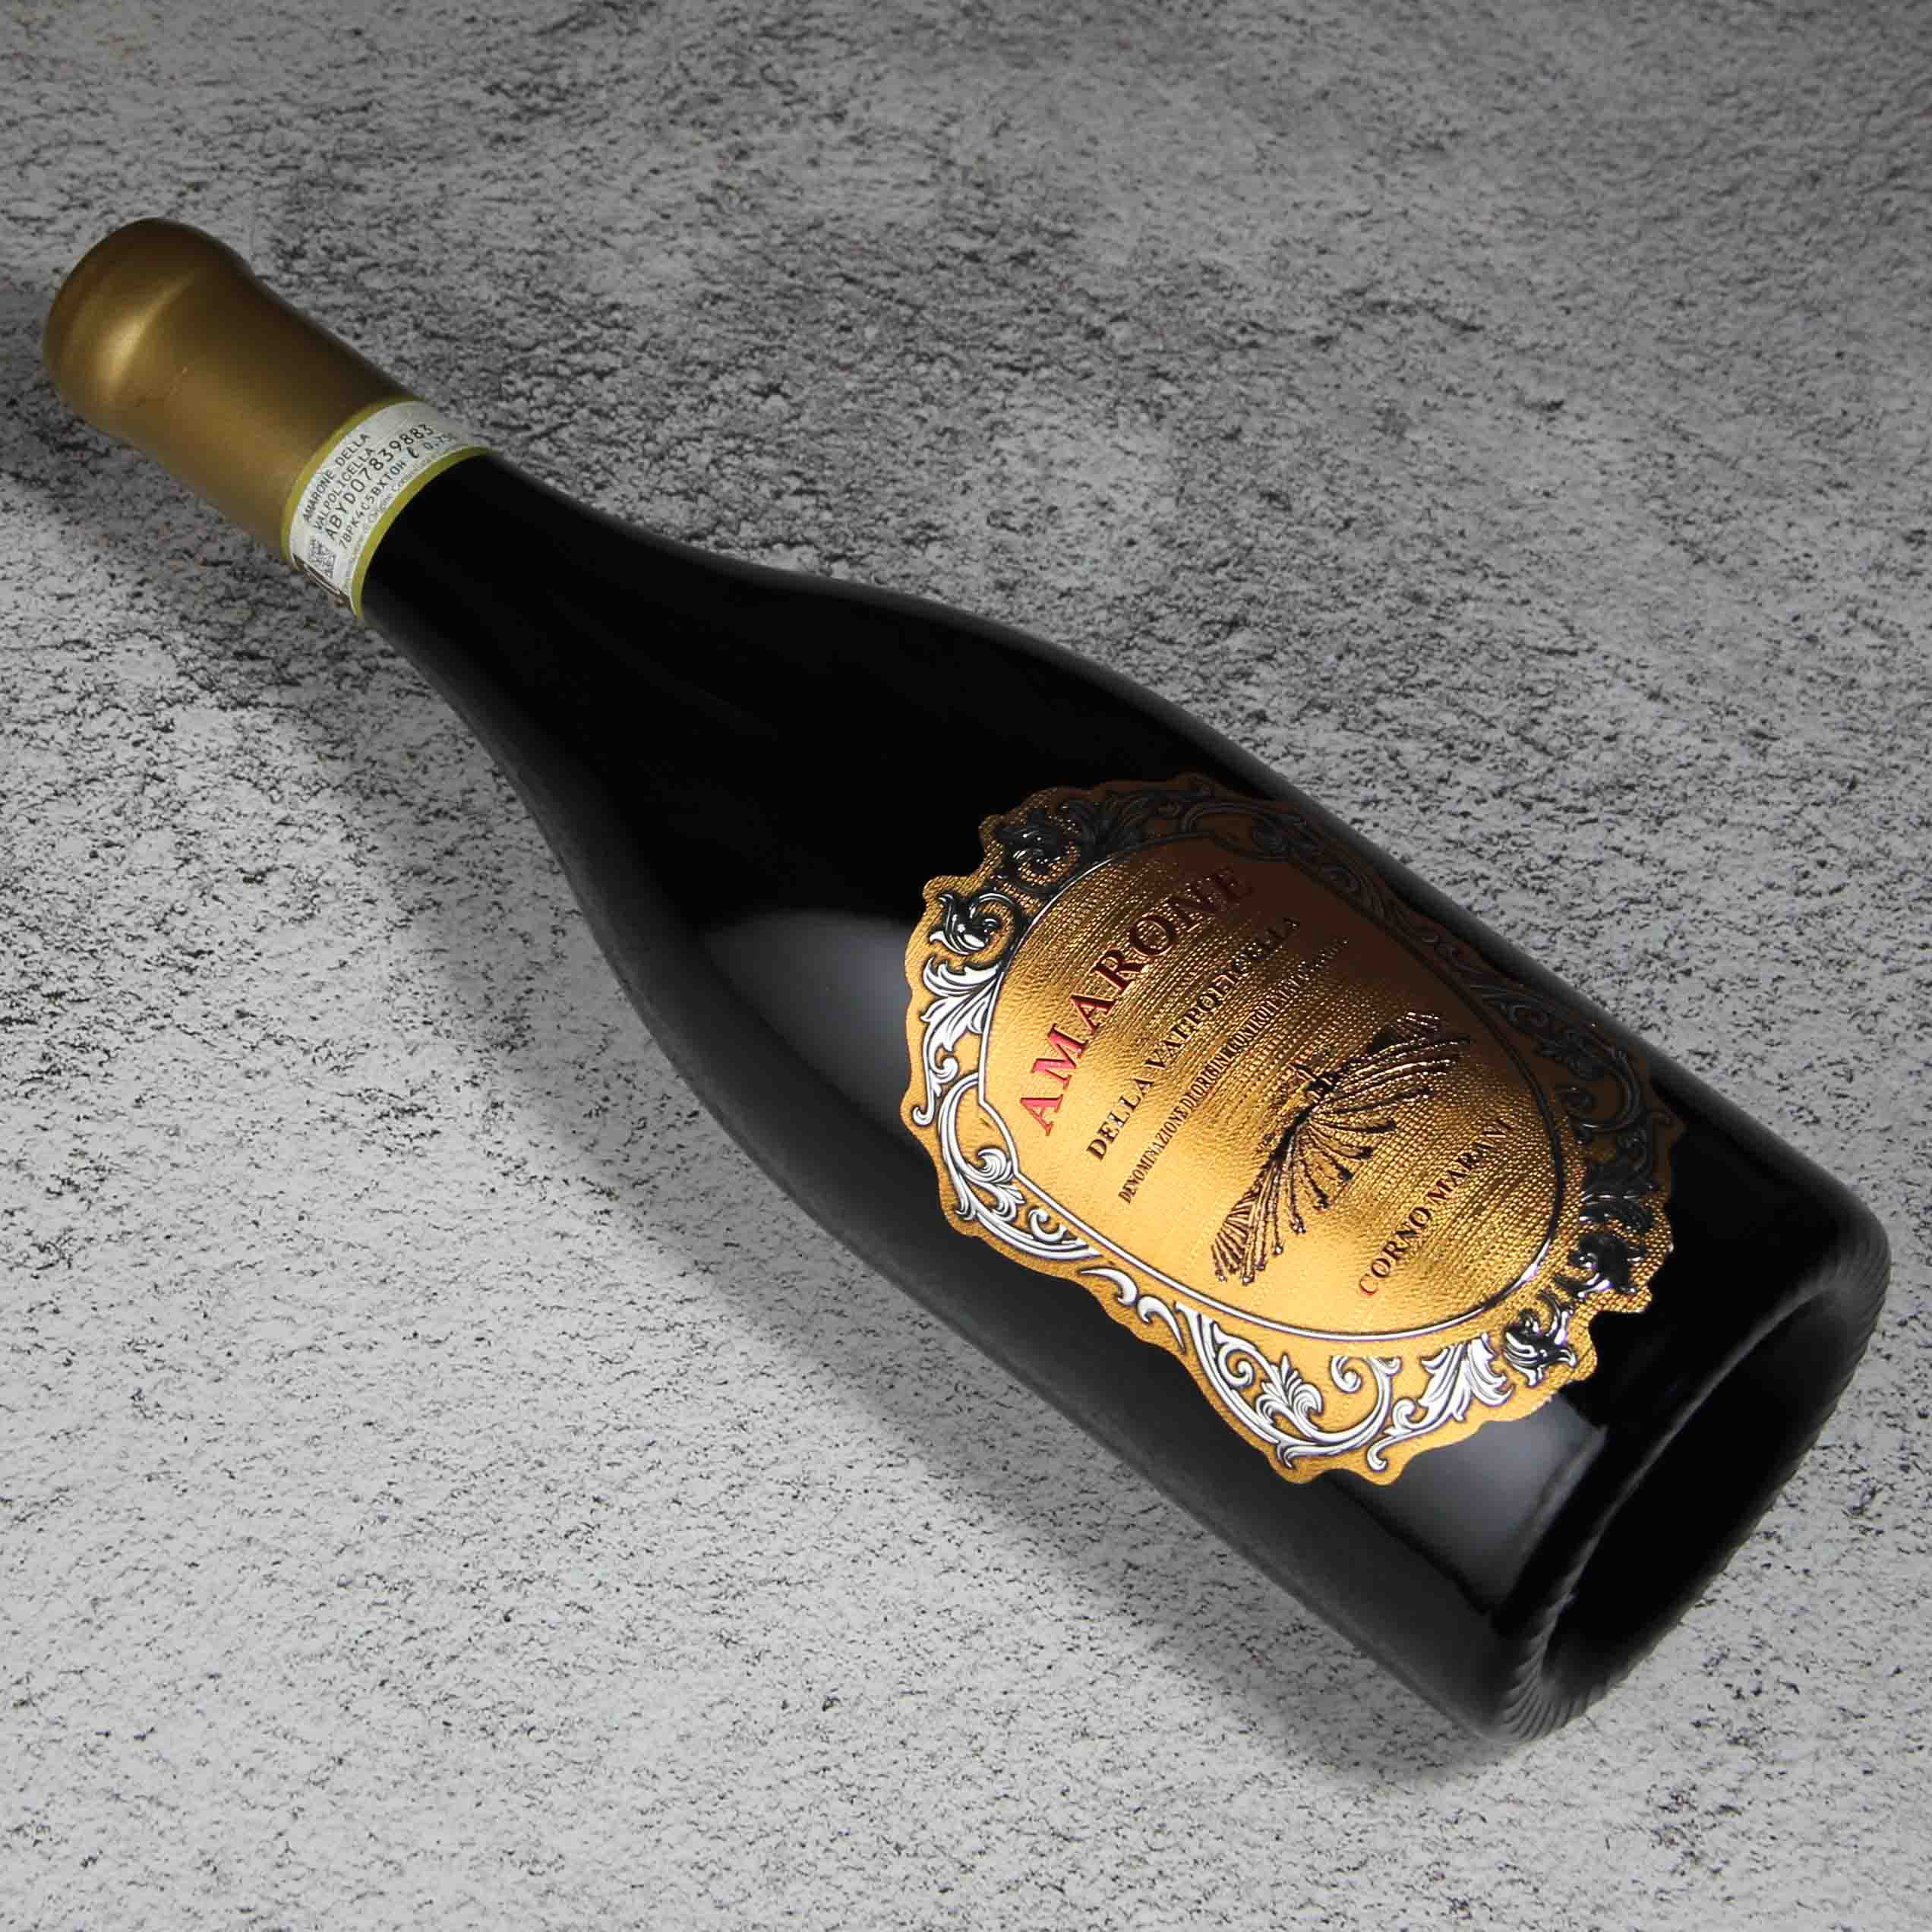 意大利科纳·马拉尼阿玛罗尼红葡萄酒